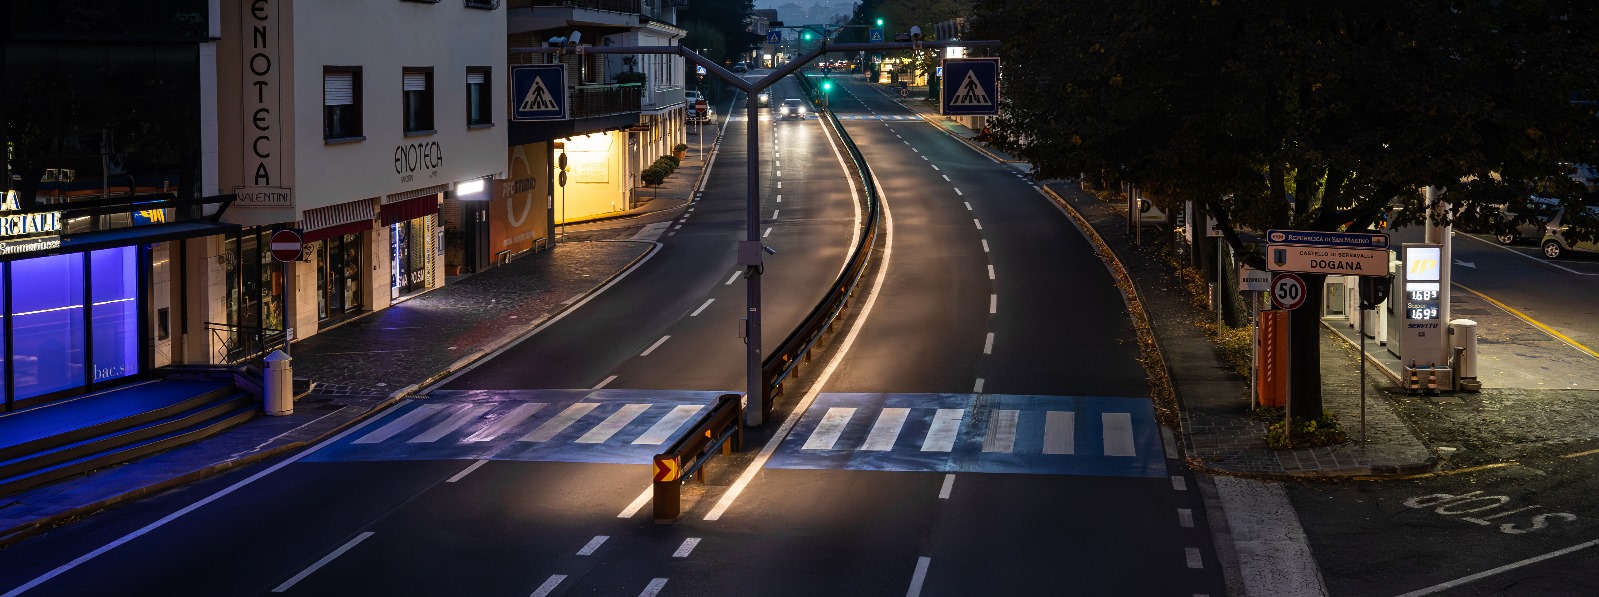 Riqualificazione della Superstrada di San Marino, nuovo guardrail lungo 550 metri a Dogana